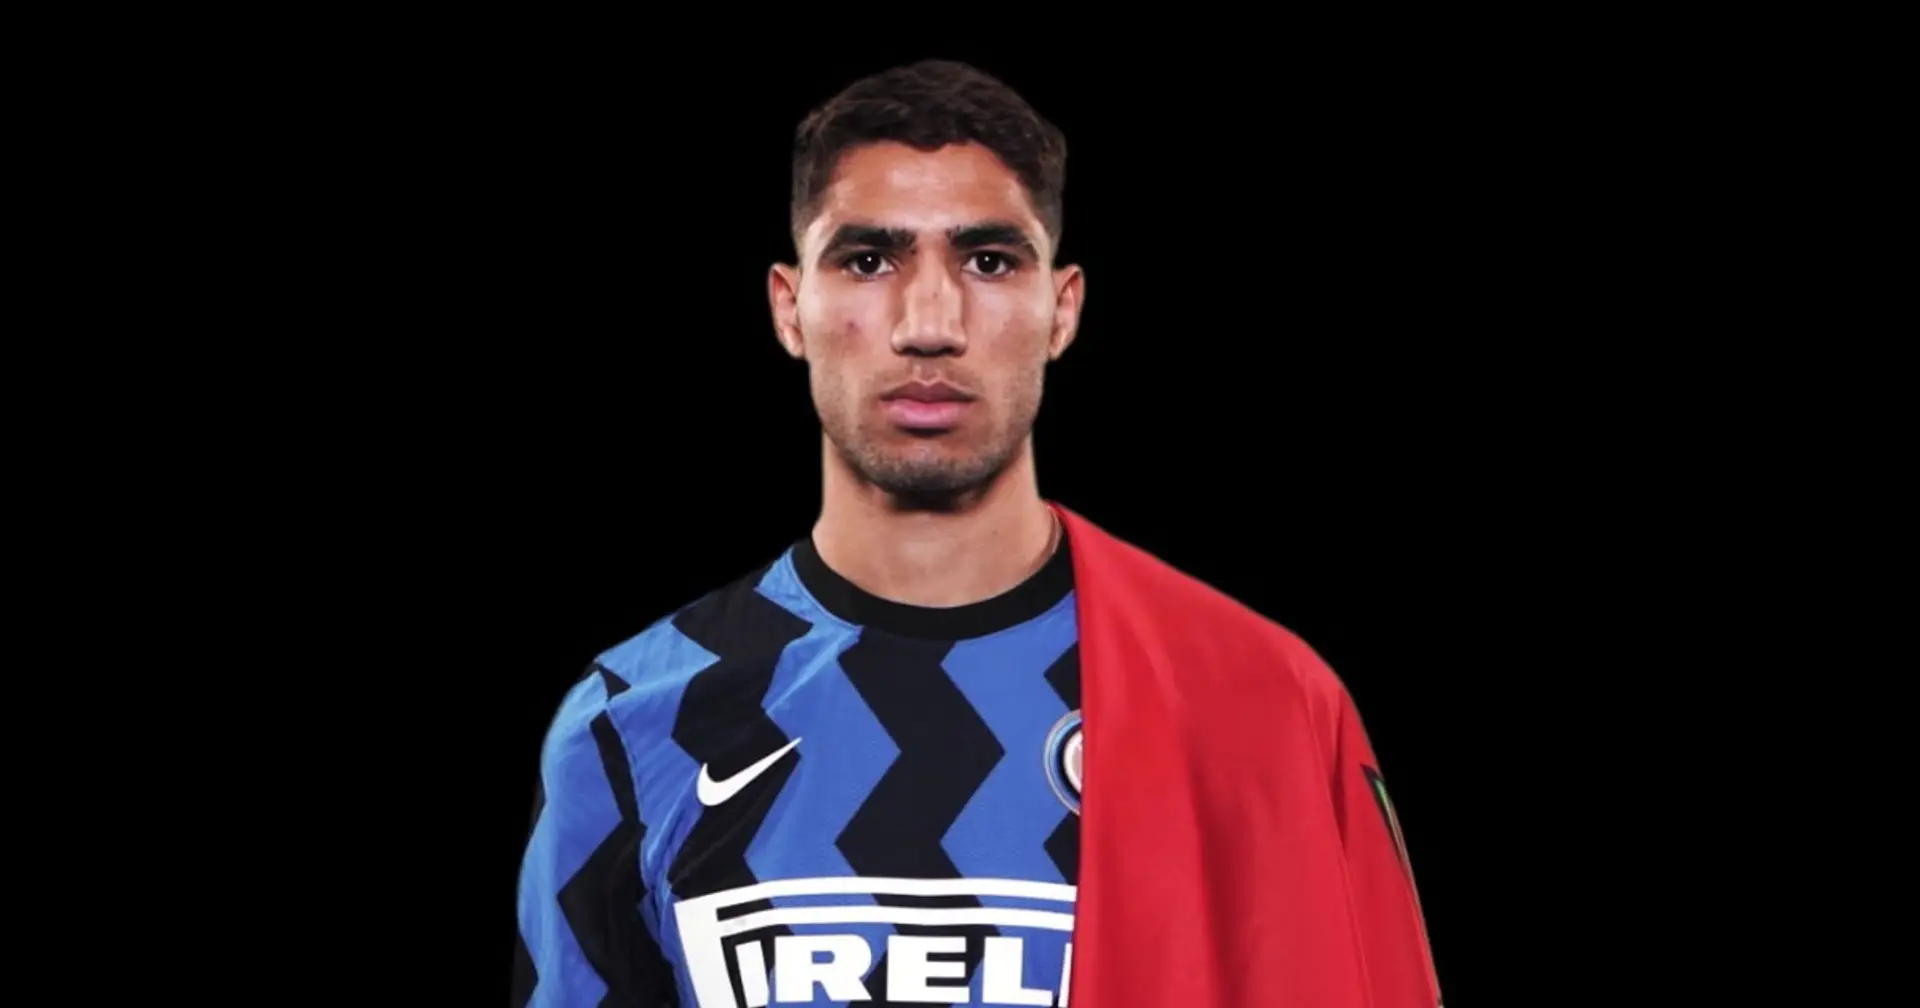 Preoccupazione in casa Inter per Hakimi: un positivo al Covid-19 tra i giocatori della Nazionale marocchina